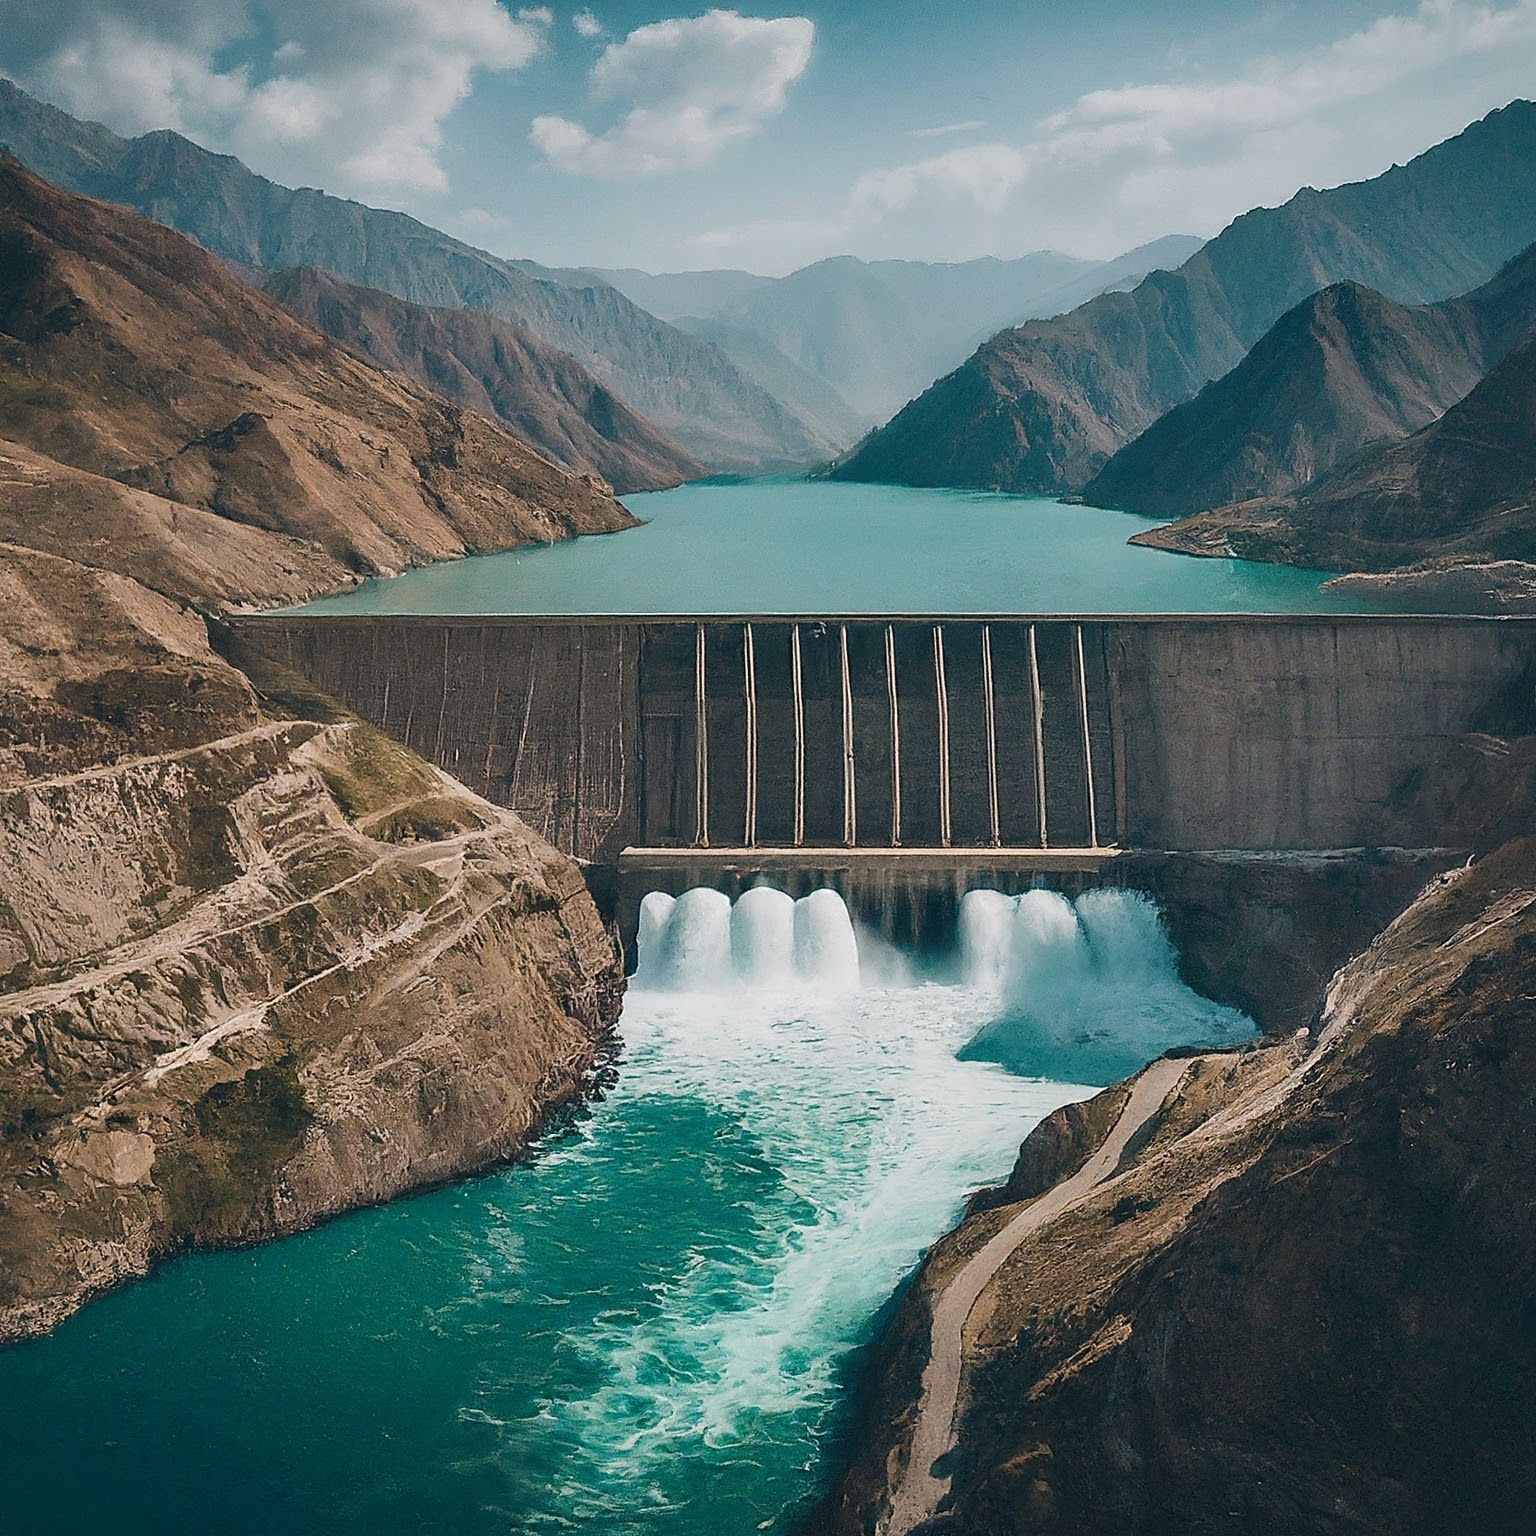 Kairakum Hydroelectric Power Plant in Tajikistan, dam and churning water.